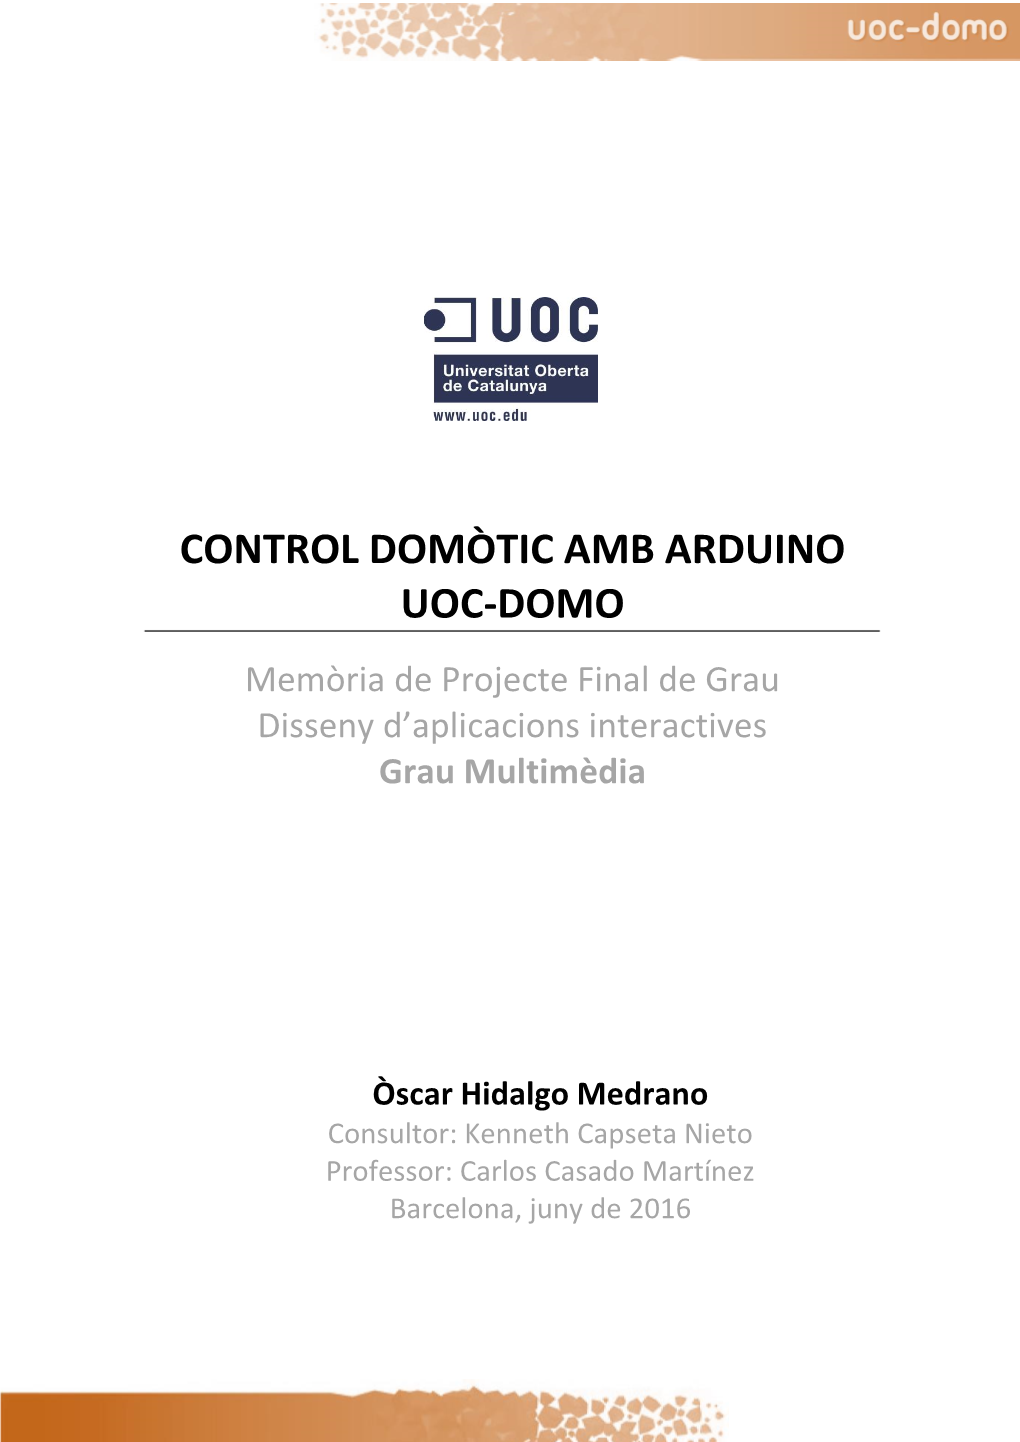 Control Domòtic Amb Arduino: UOC-Domo